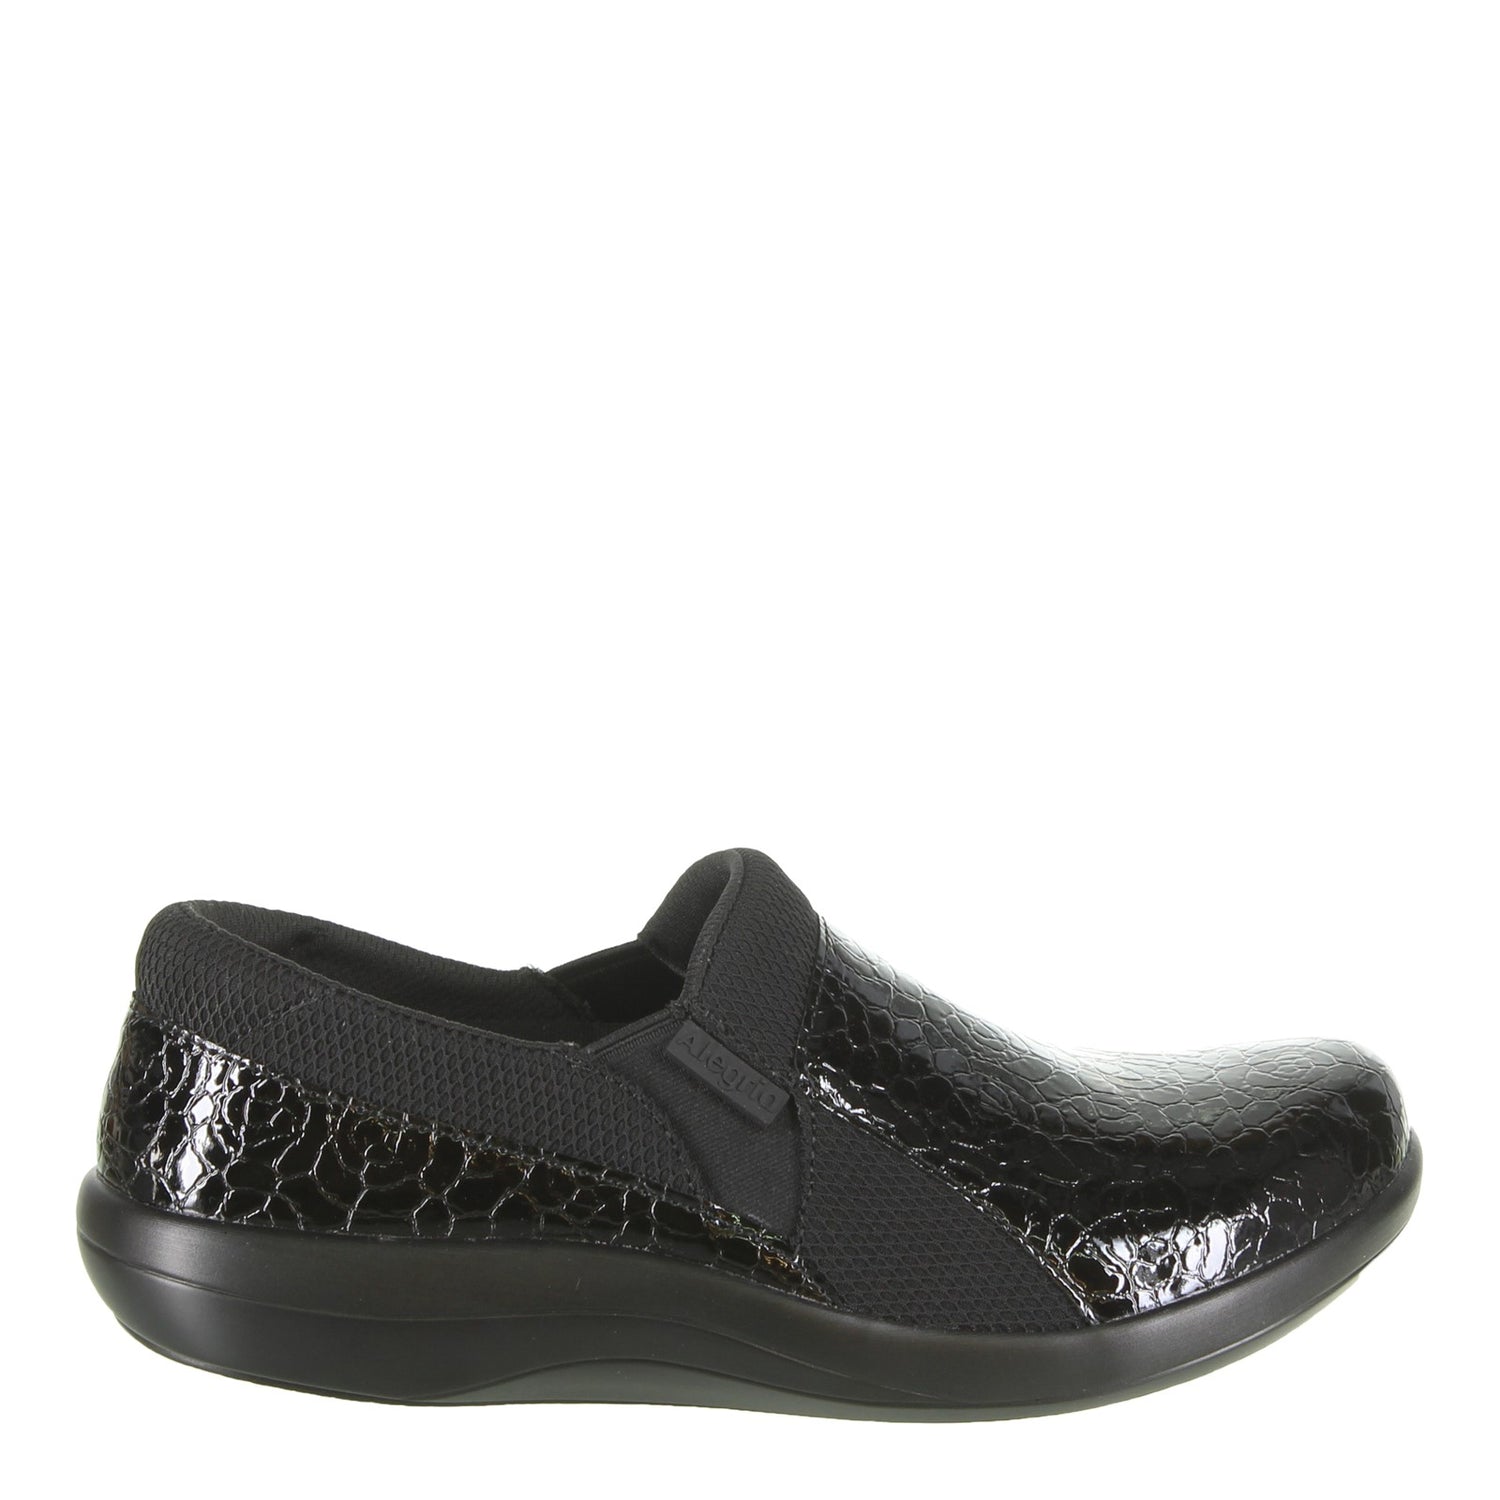 Peltz Shoes  Women's Alegria Duette Professional Slip On Flourish Black DUE-955